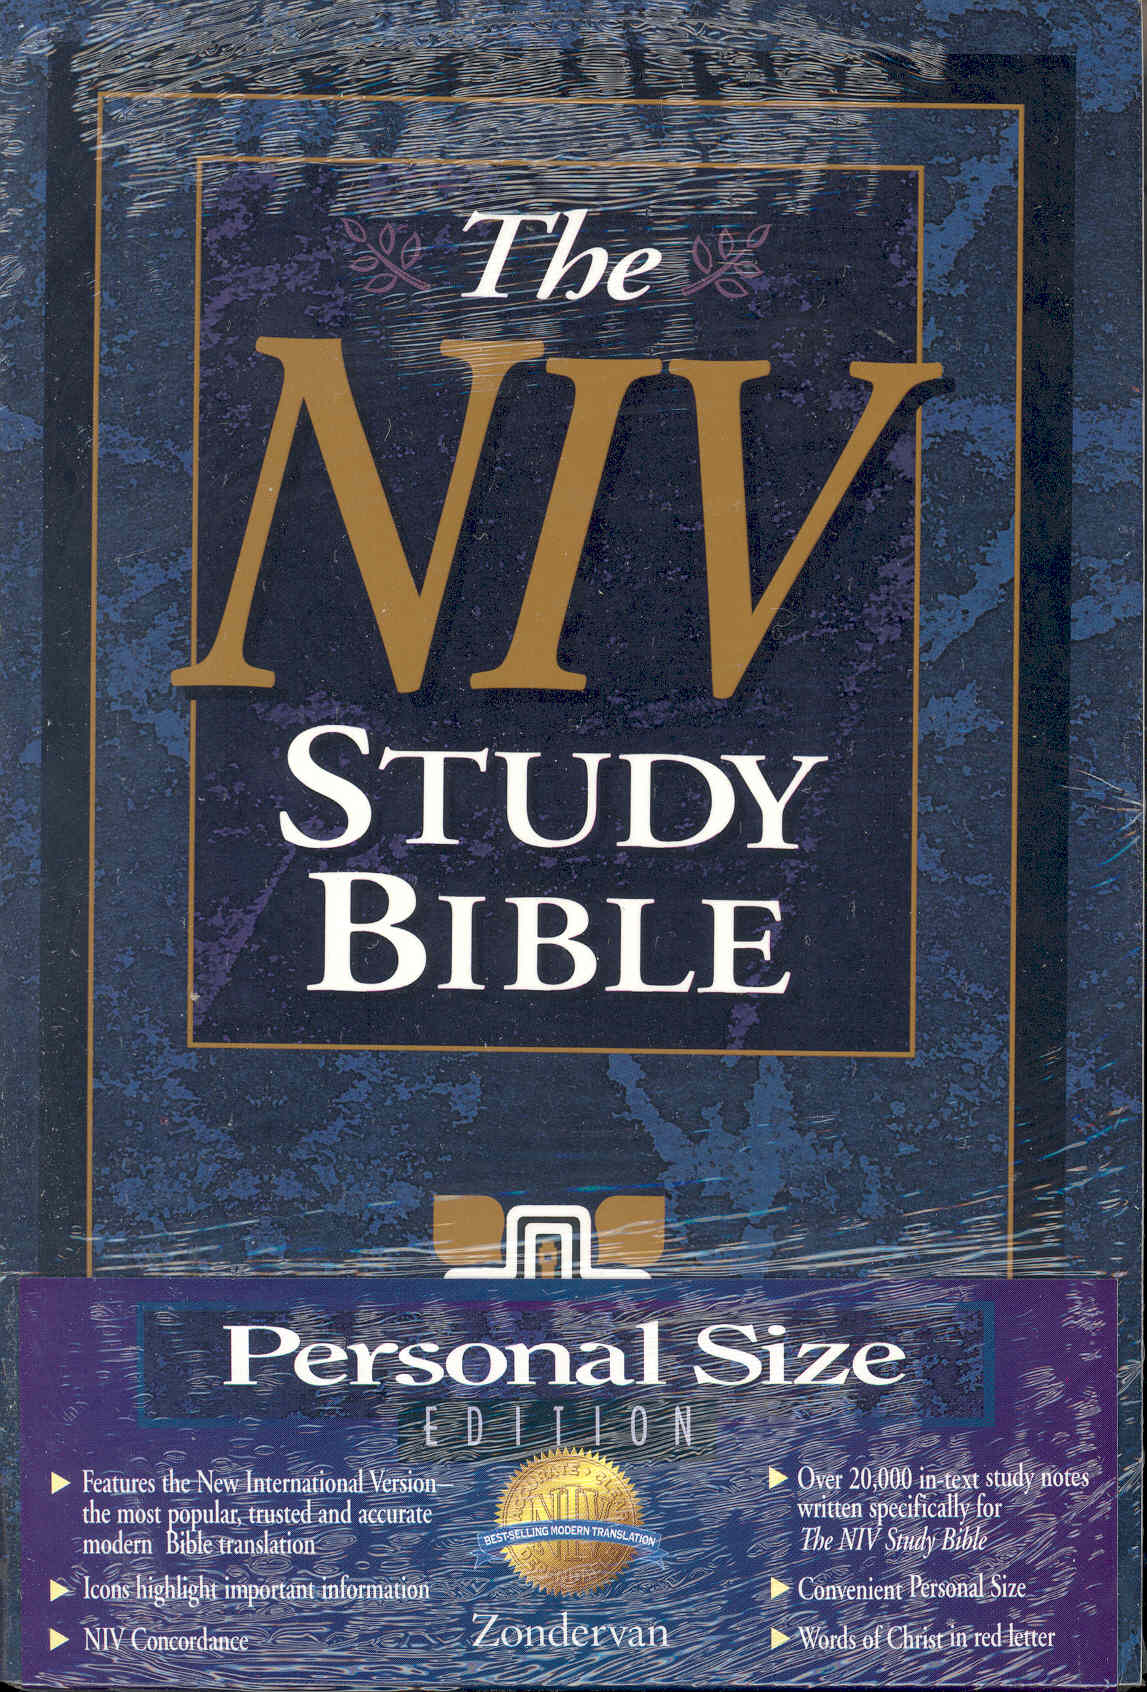 The NIV Study Bible